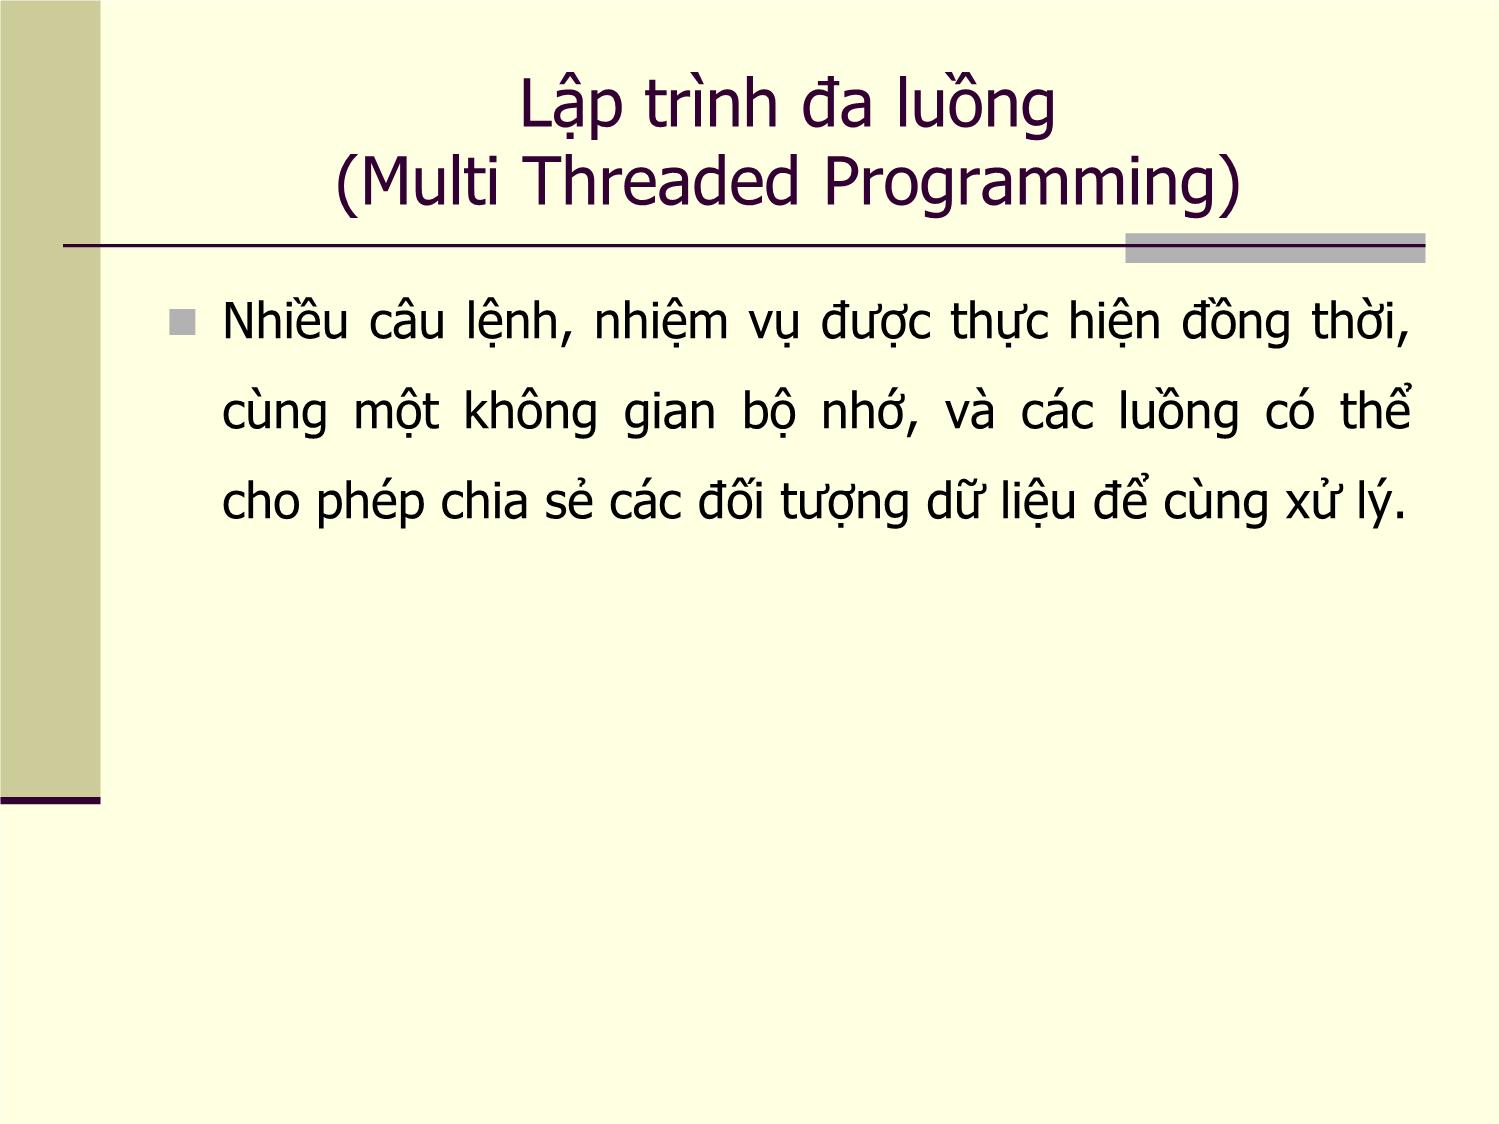 Bài giảng Lập trình Java - Chương 4: Lập trình đa luồng (Multithread) trong Java trang 4